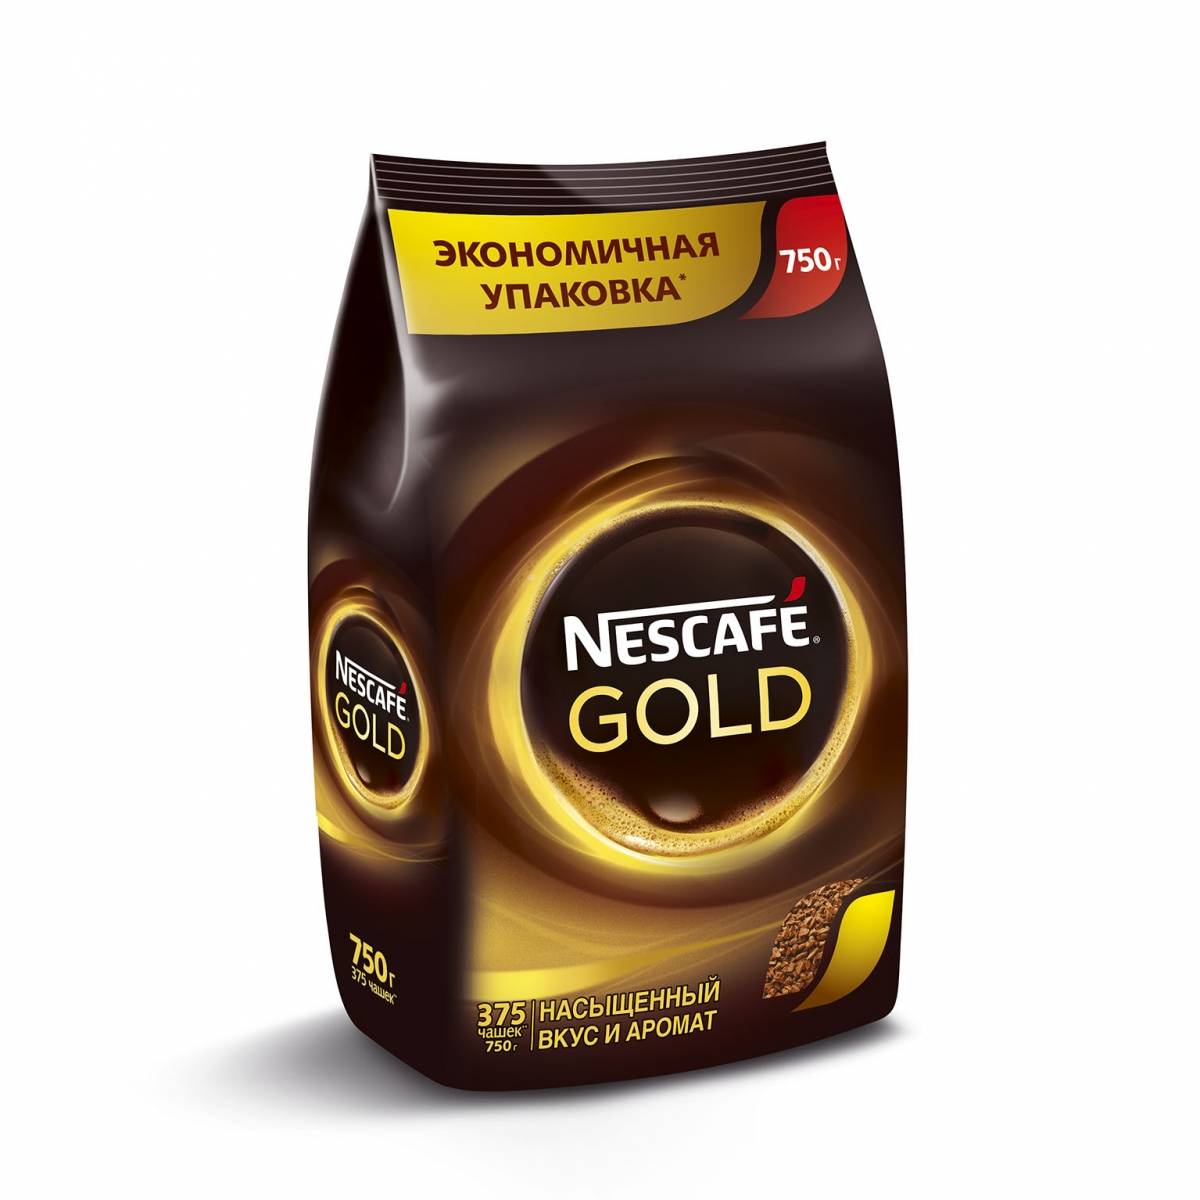 Nescafe gold растворимый 900. Кофе "Nescafe Gold", 750 гр.. Кофе Nescafe Gold раств.субл.900г пакет. Кофе растворимый Nescafe Gold 900. Nescafe Gold растворимый 900 г.